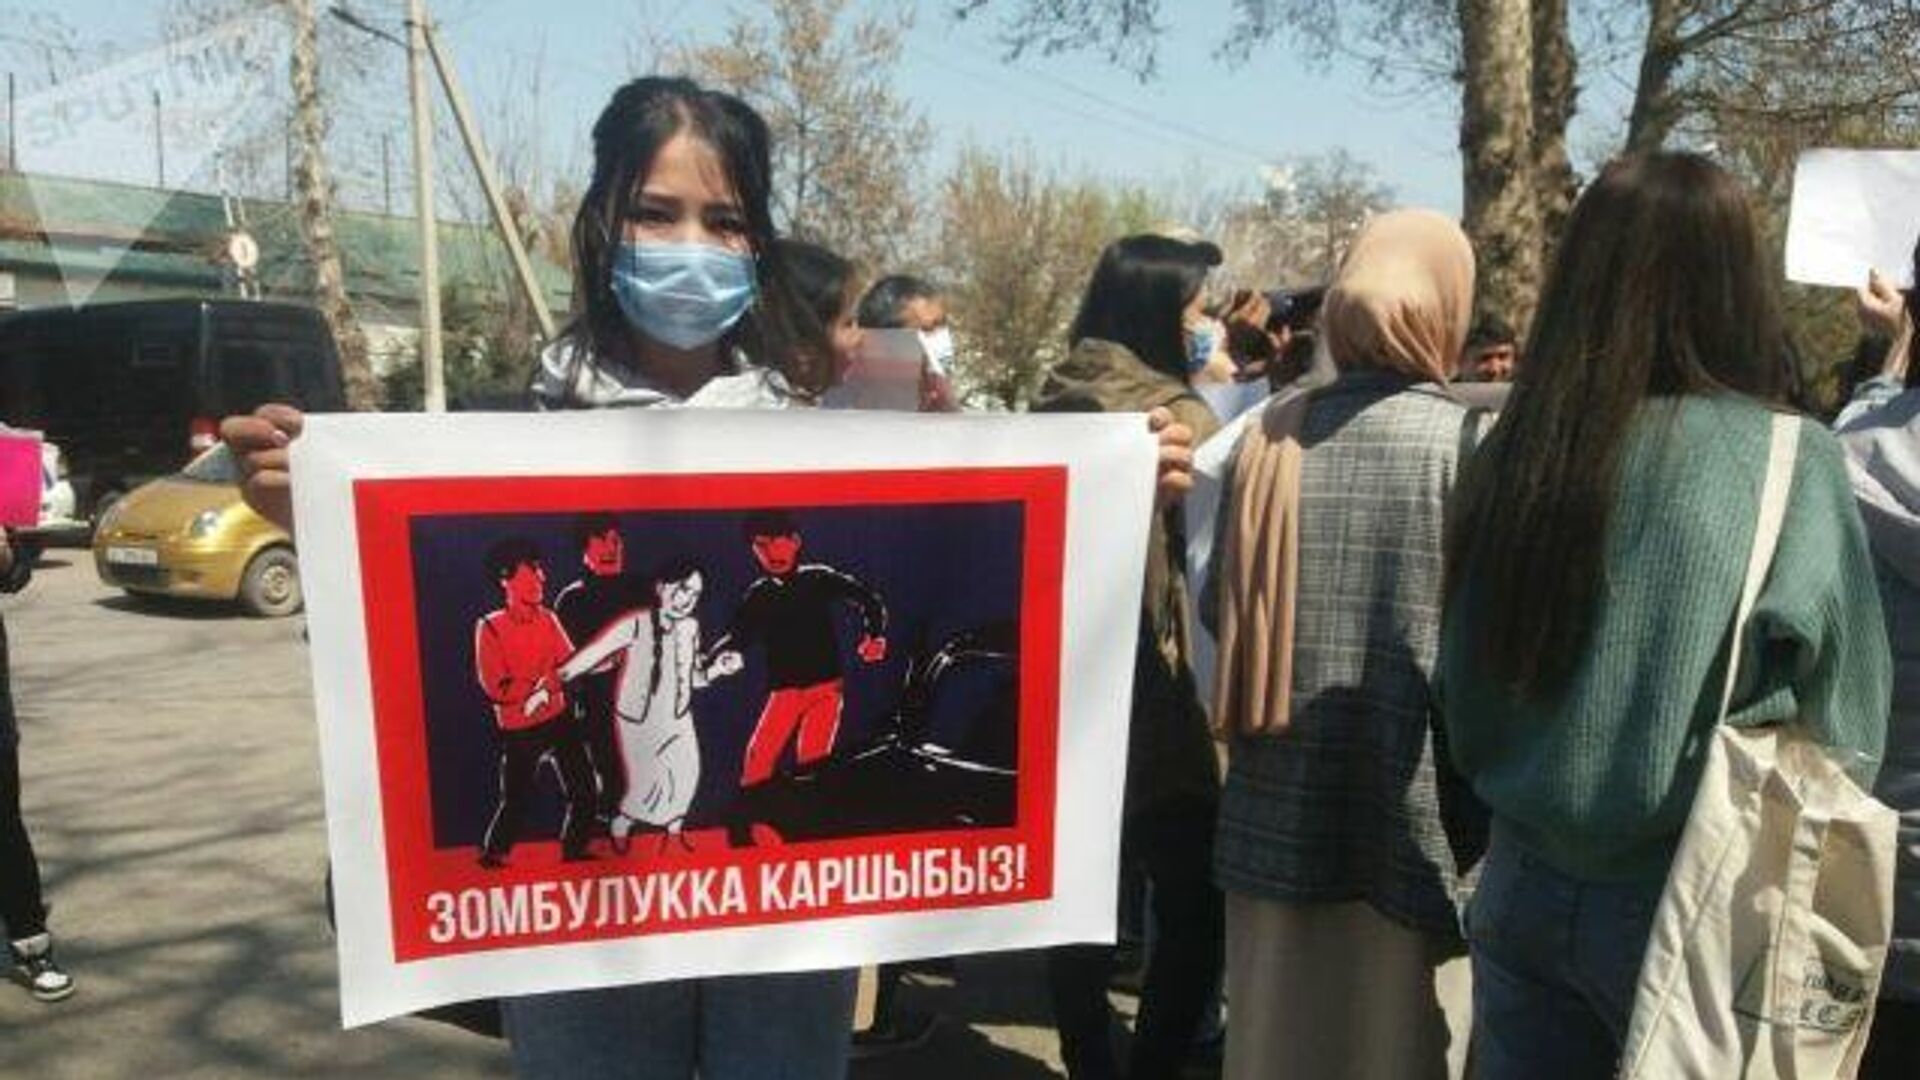 Митинг против насильственного принуждения женщин к браку проходит в Бишкеке - РИА Новости, 1920, 08.04.2021